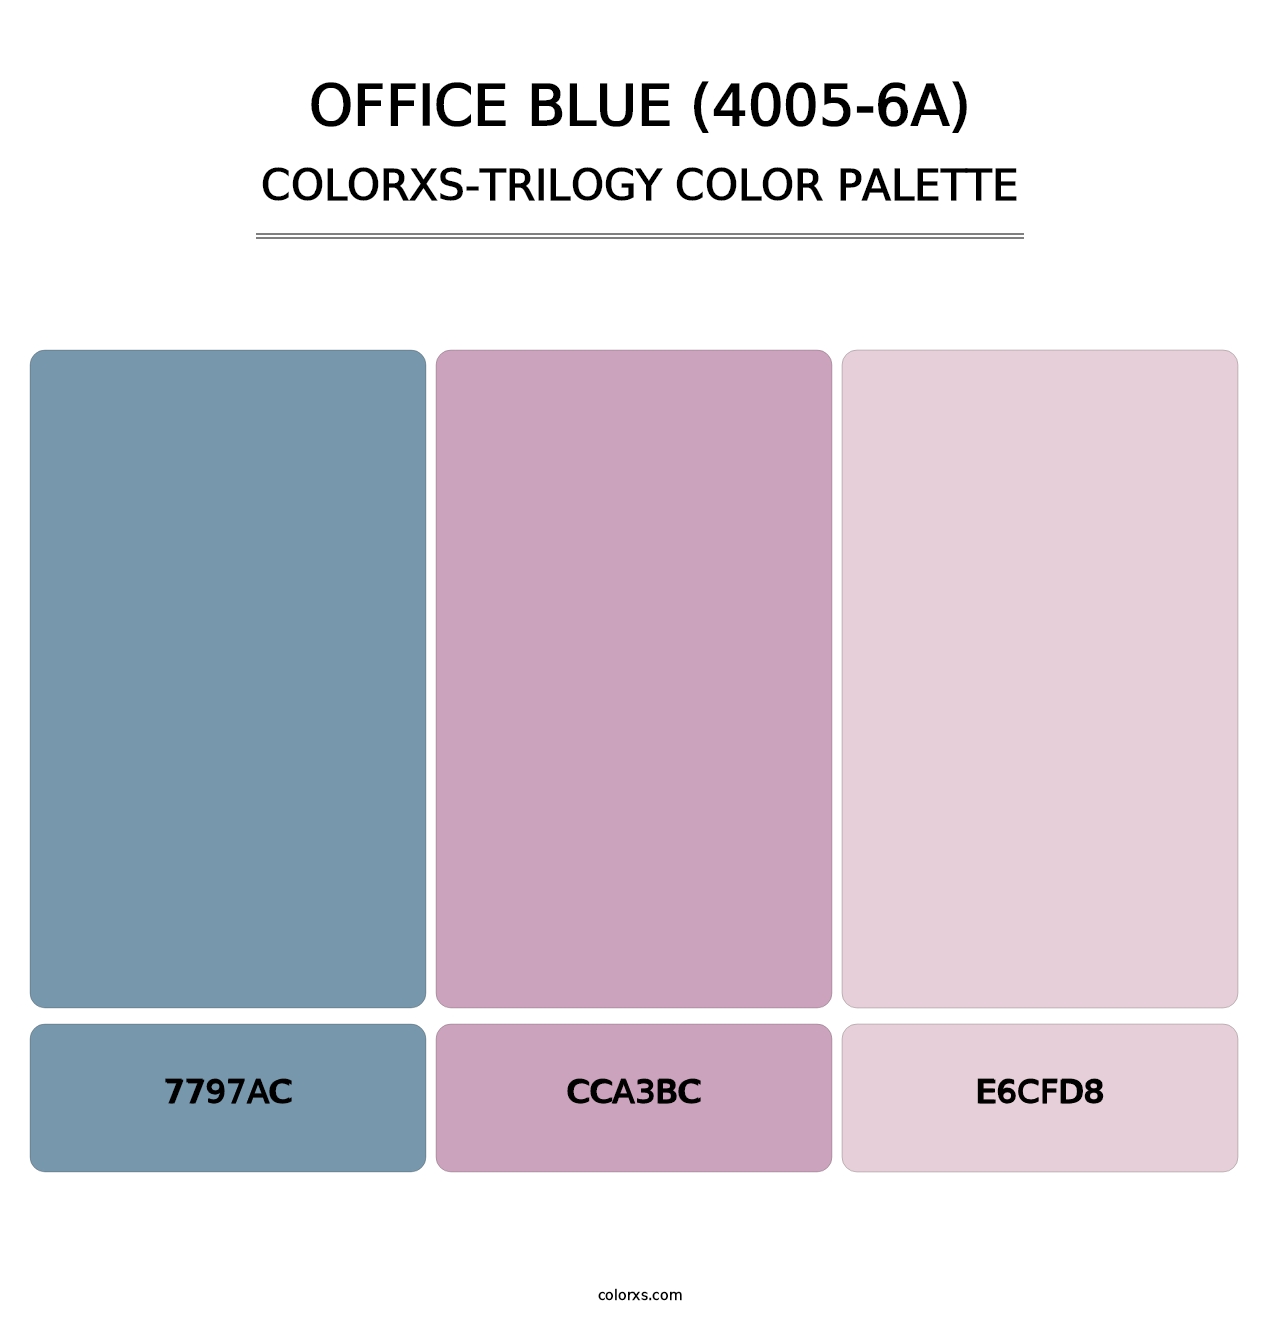 Office Blue (4005-6A) - Colorxs Trilogy Palette